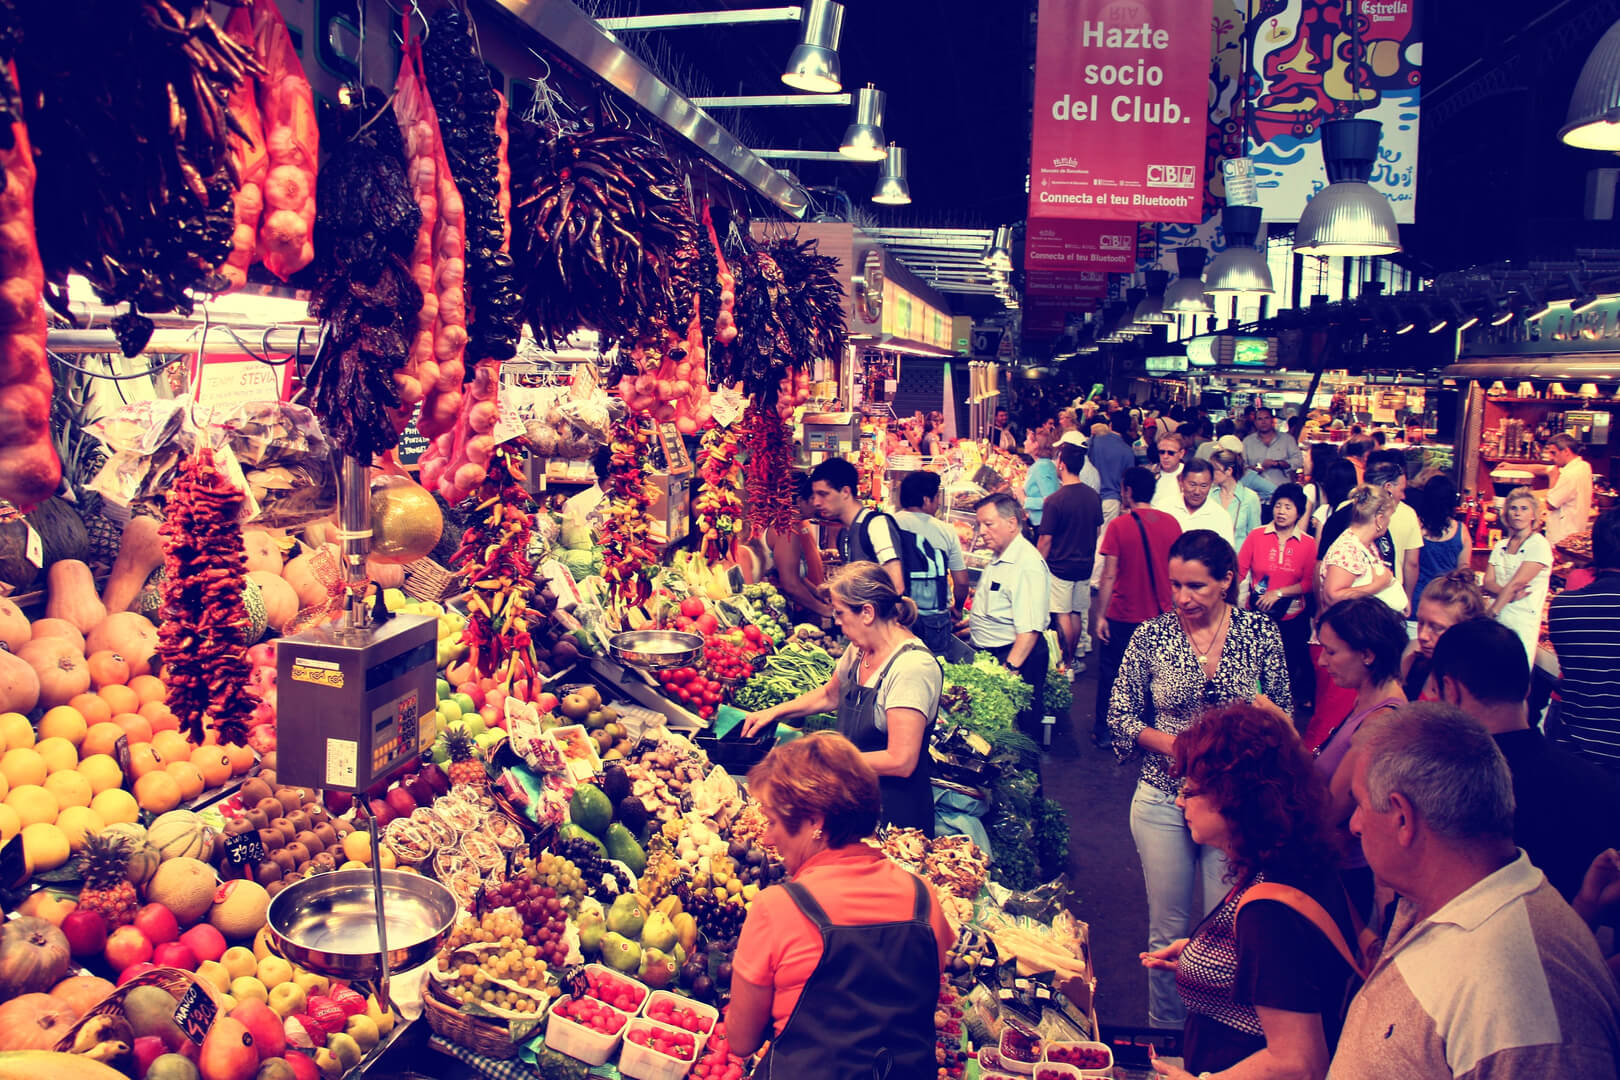 Туристы посещают знаменитый рынок Ла Бокерия в Барселоне. Это один из старейших рынков в Европе, который до сих пор существует.